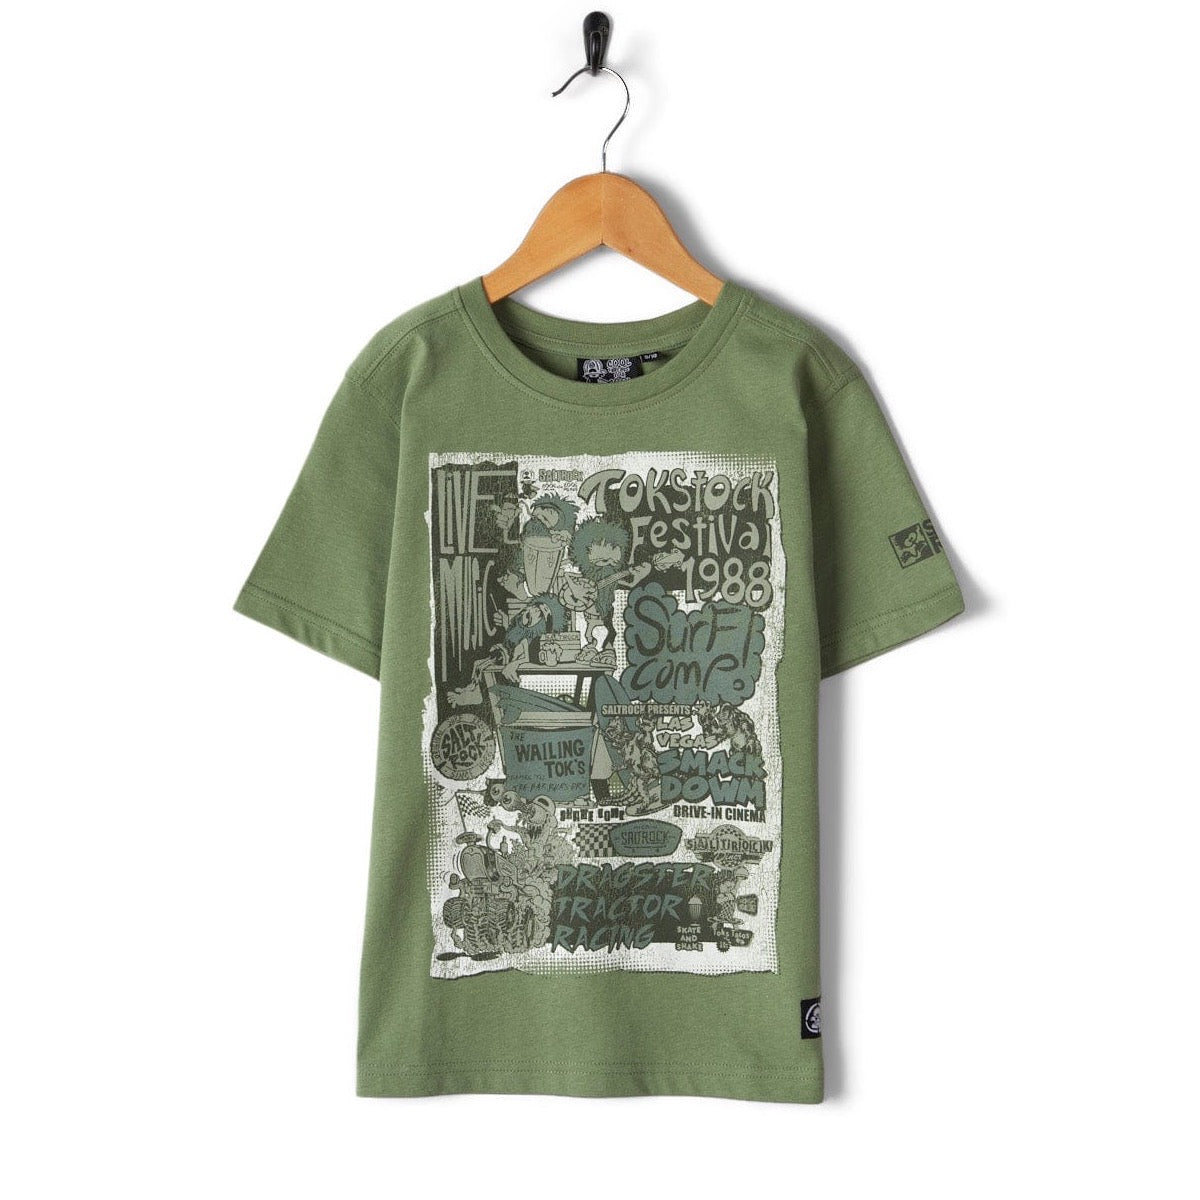 Saltrock Festival Merch Kids T-Shirt Green Clothing 7/8YRS / Green,9/10YRS / Green,11/12YRS / Green,13YRS / Green